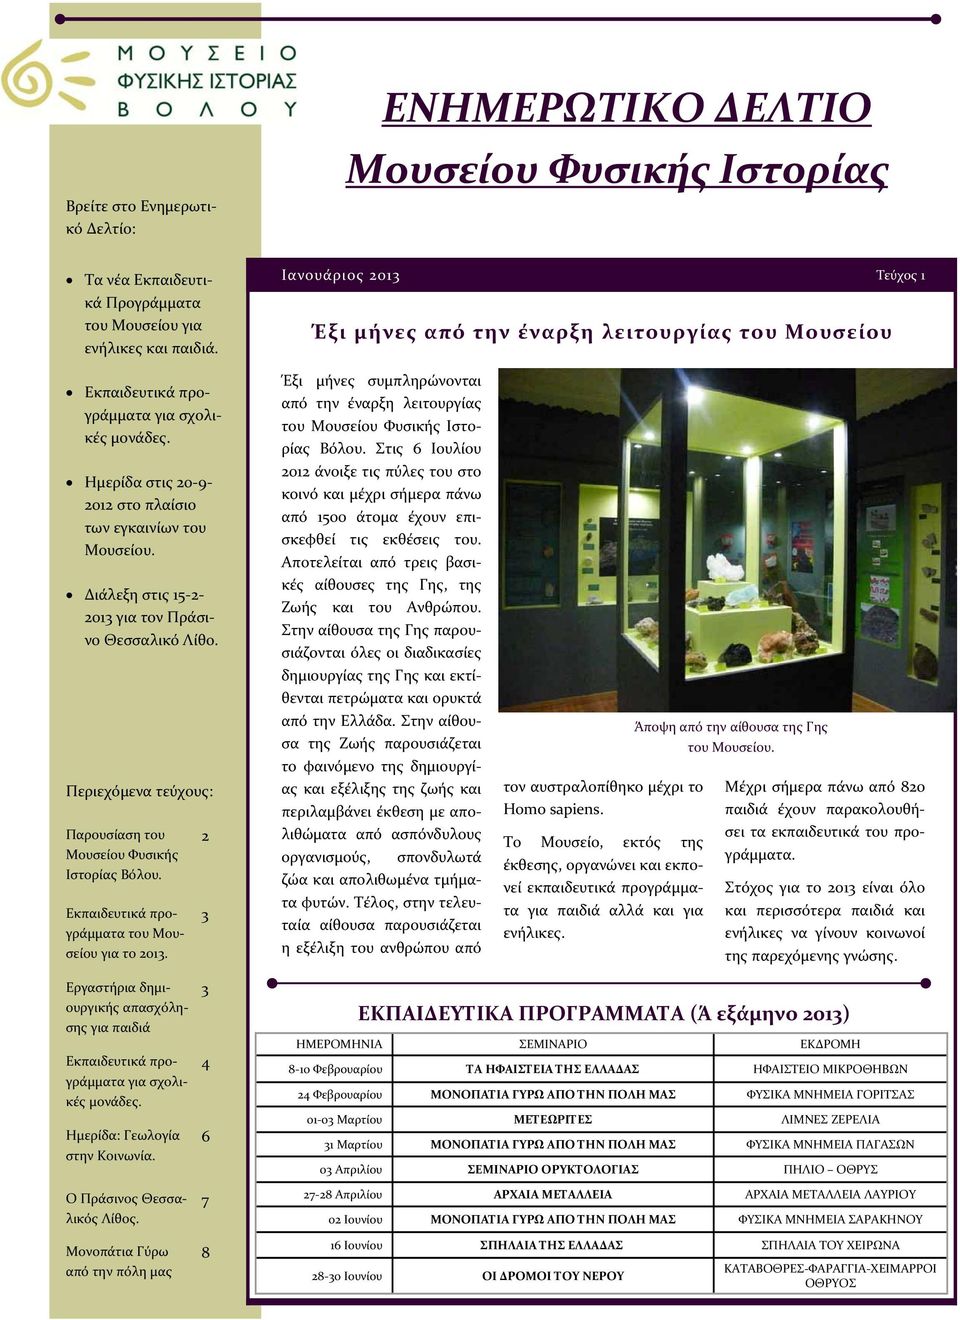 Ημερίδα στις 20 9 2012 στο πλαίσιο των εγκαινίων του Μουσείου. Διάλεξη στις 15 2 2013 για τον Πράσινο Θεσσαλικό Λίθο. Περιεχόμενα τεύχους: Παρουσίαση του Μουσείου Φυσικής Ιστορίας Βόλου.